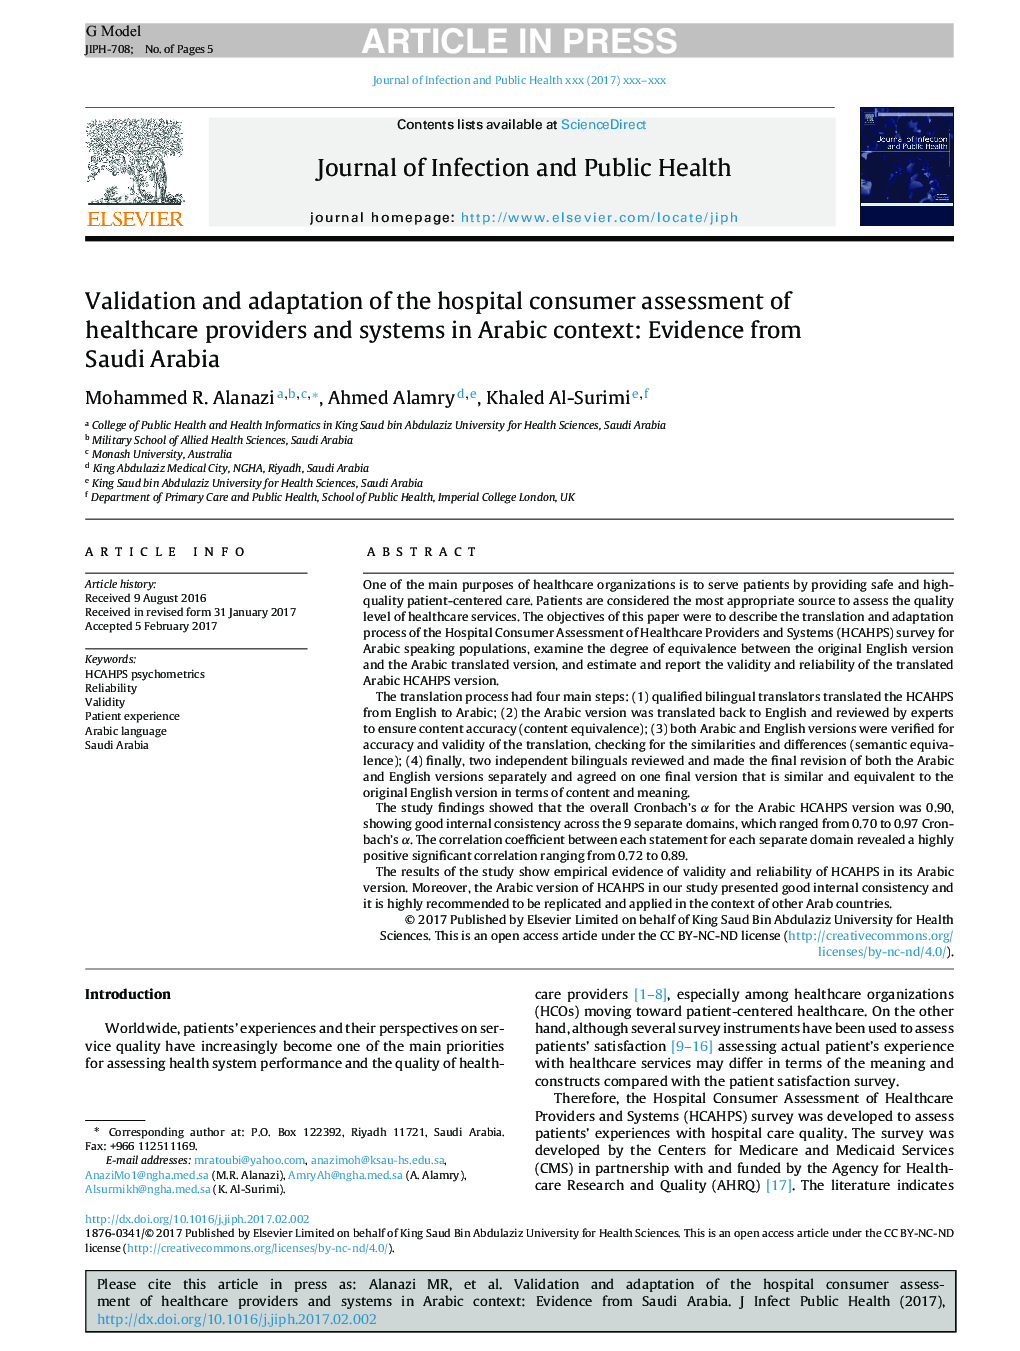 اعتبارسنجی و سازگاری ارزیابی مصرف کننده بیمار از ارائه دهندگان خدمات بهداشتی و سیستم در متن عربی: شواهد از عربستان سعودی 